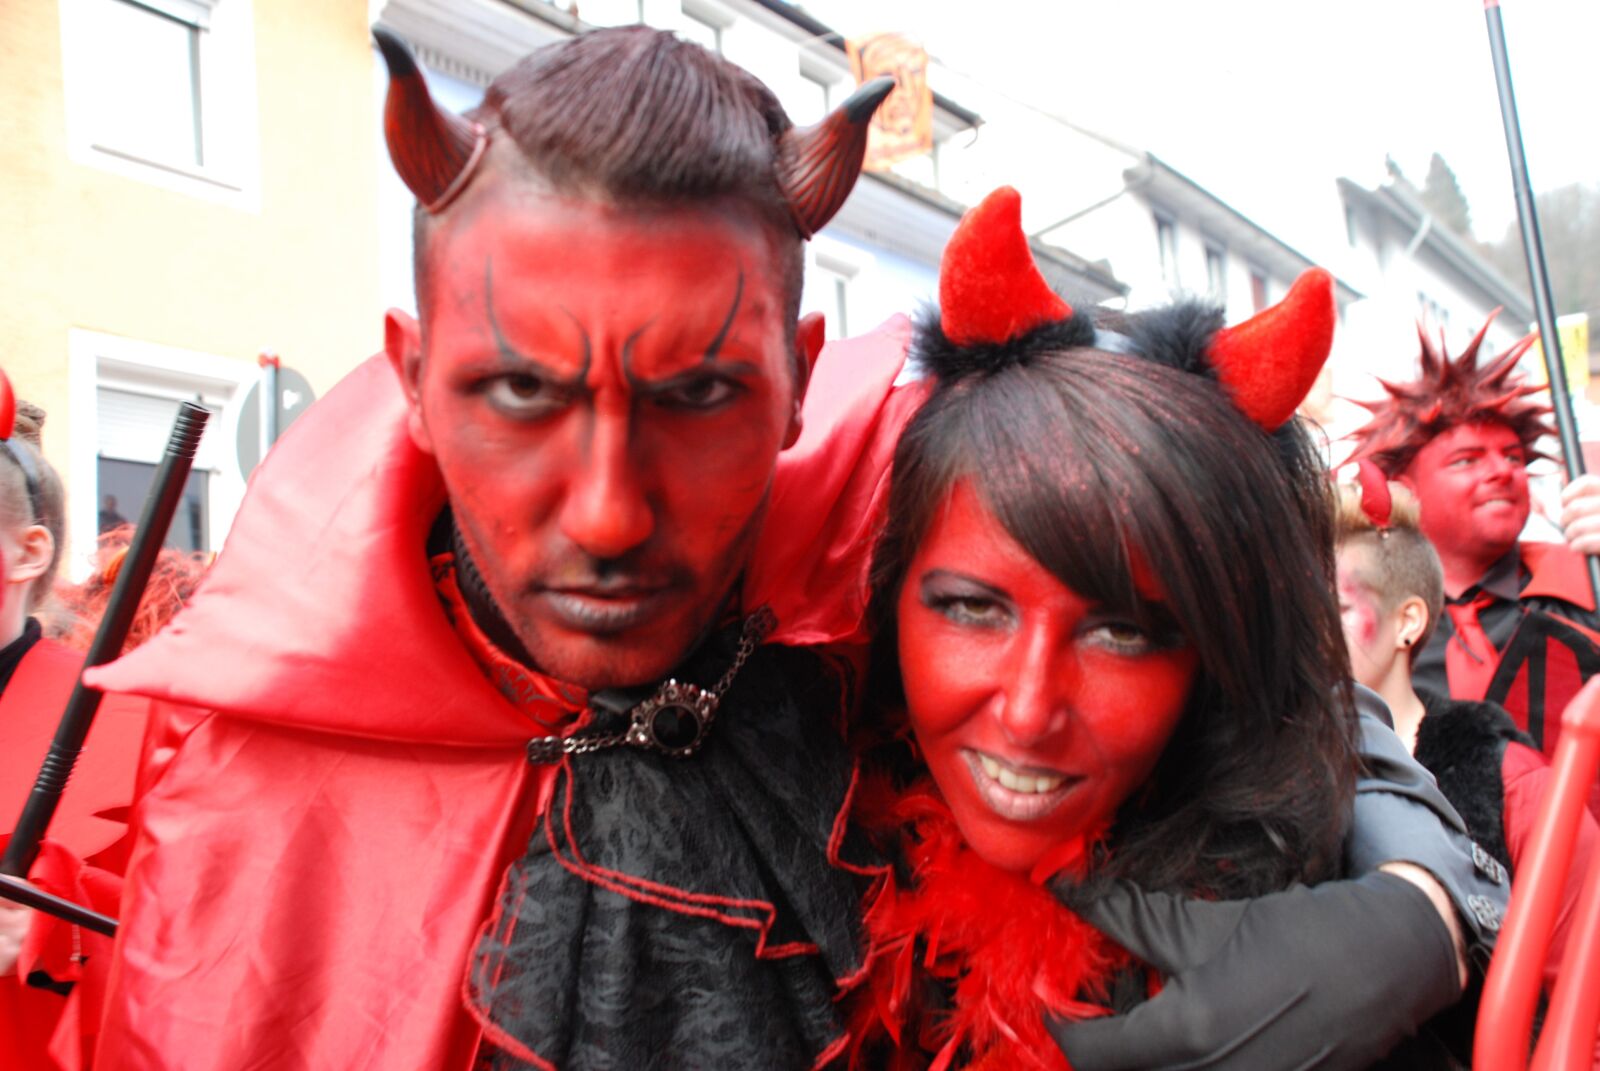 Nikon D80 sample photo. Carnival, devil, diabolic photography